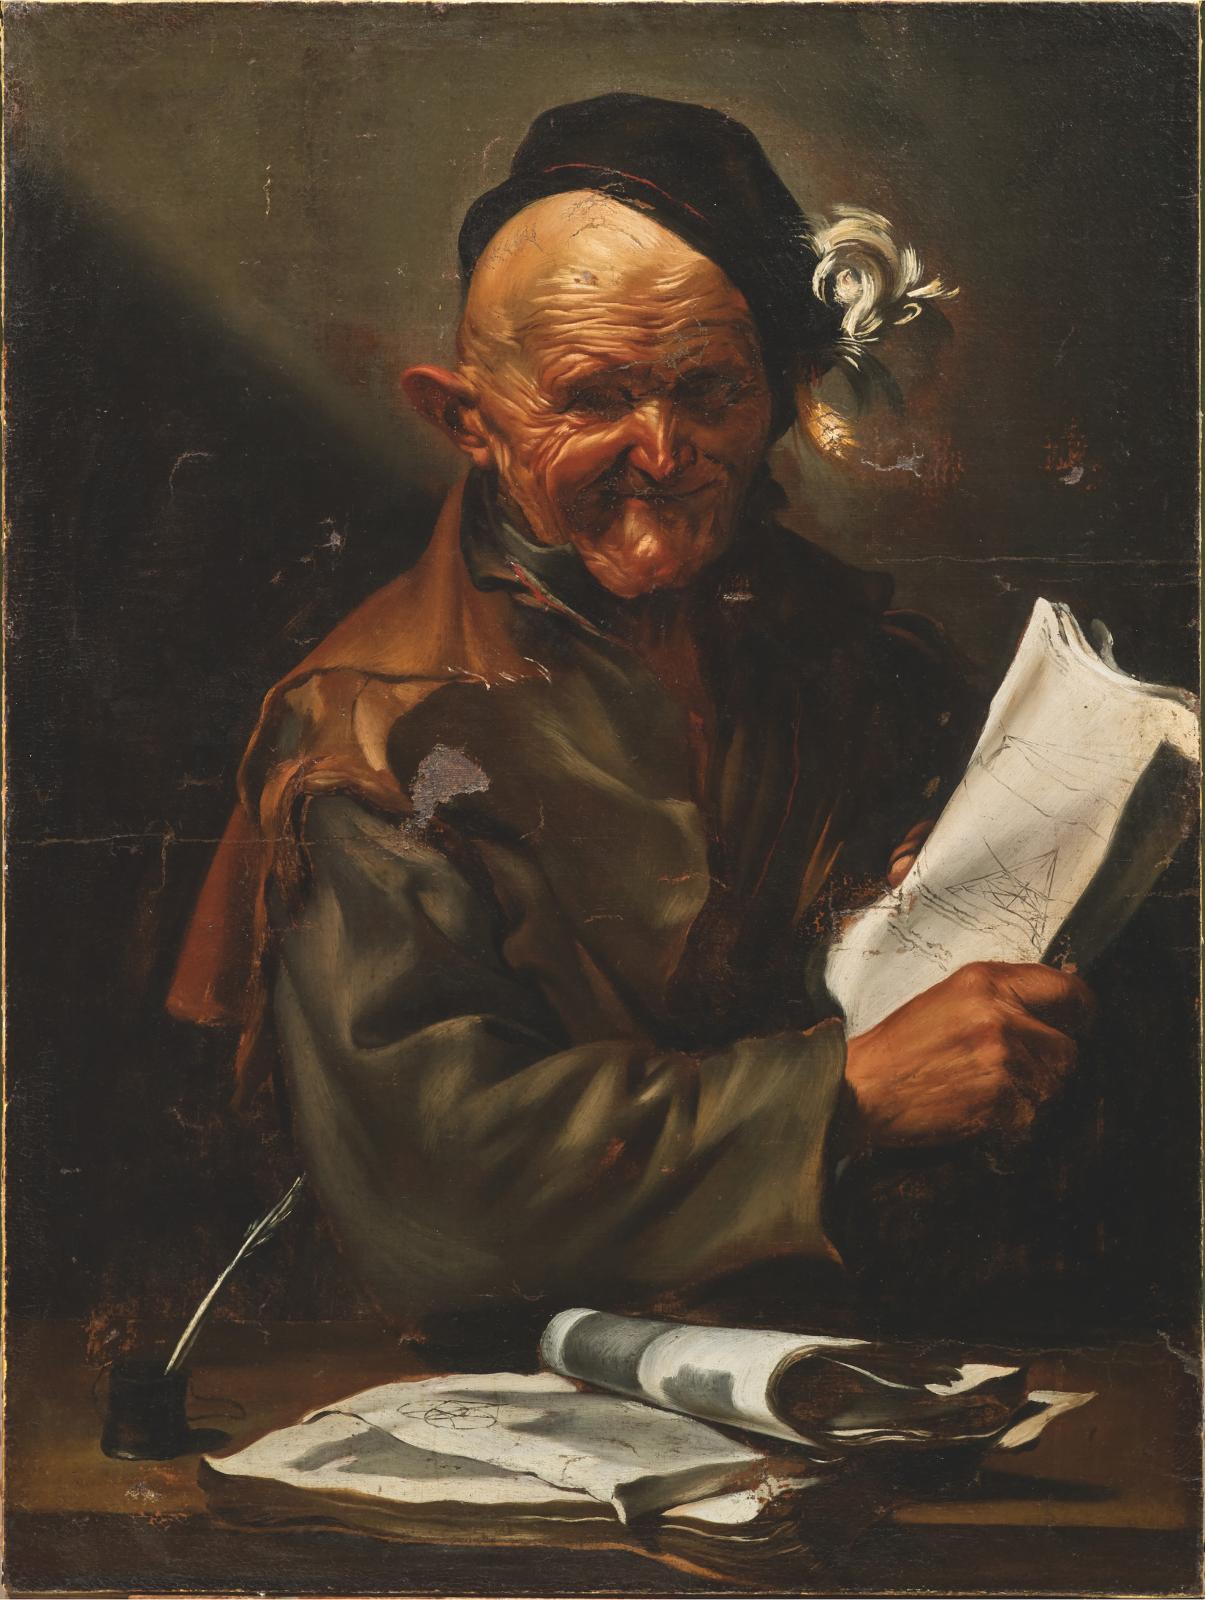 A Dapper Old Chap By Jusepe de Ribera